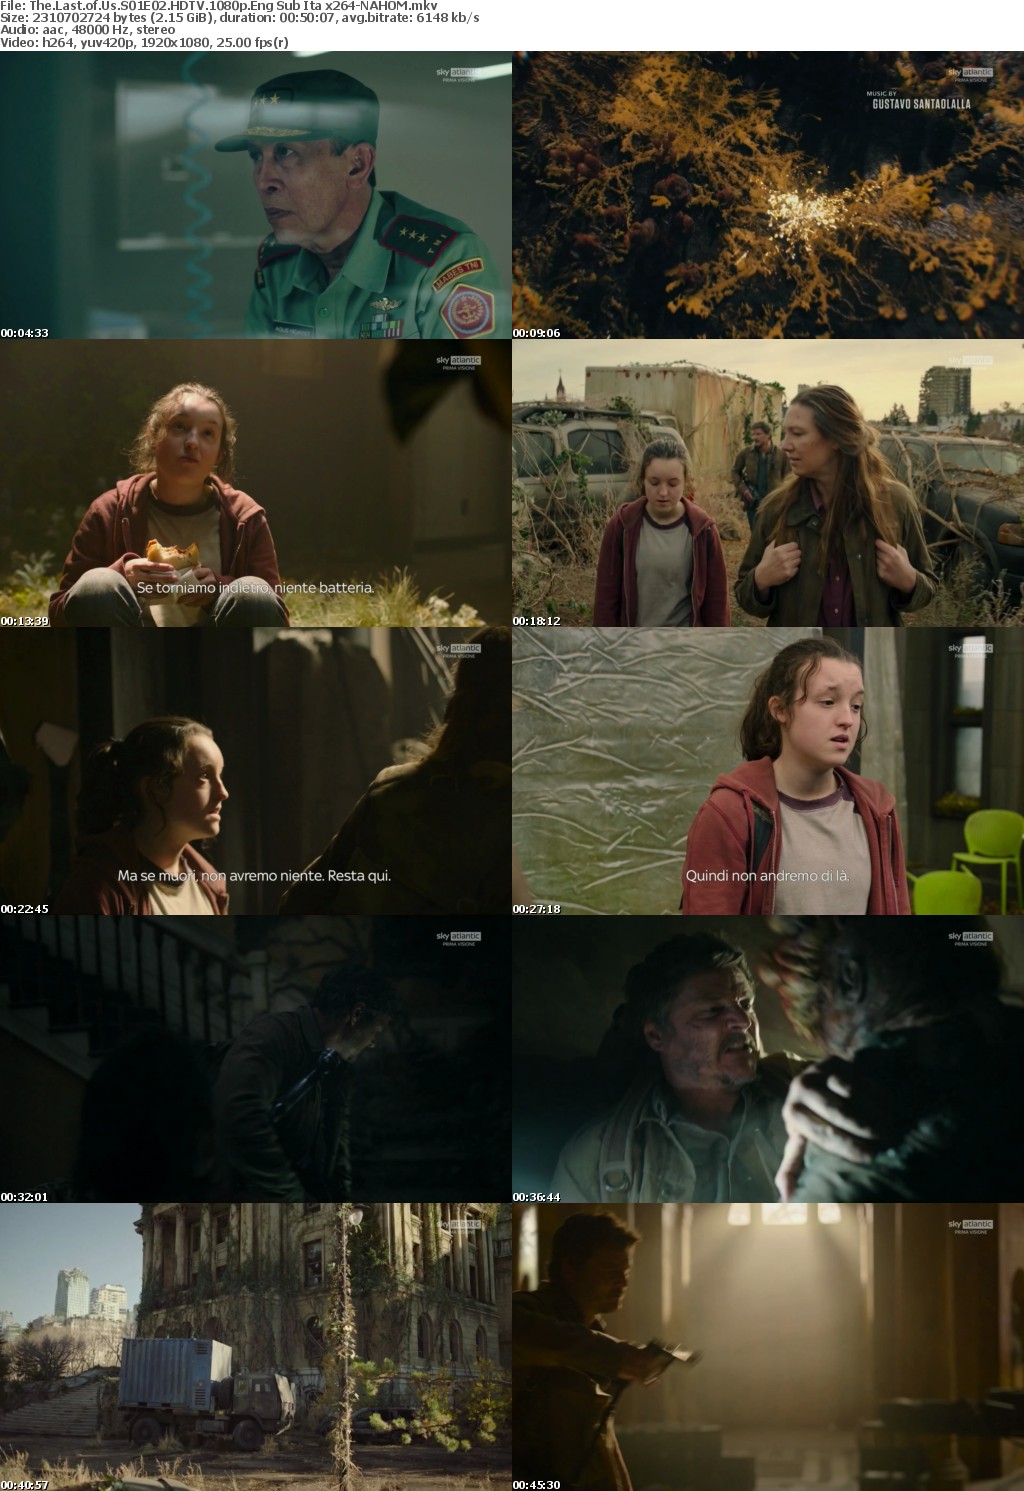 The Last of Us S01E02 HDTV 1080p Eng Sub Ita x264-NAHOM